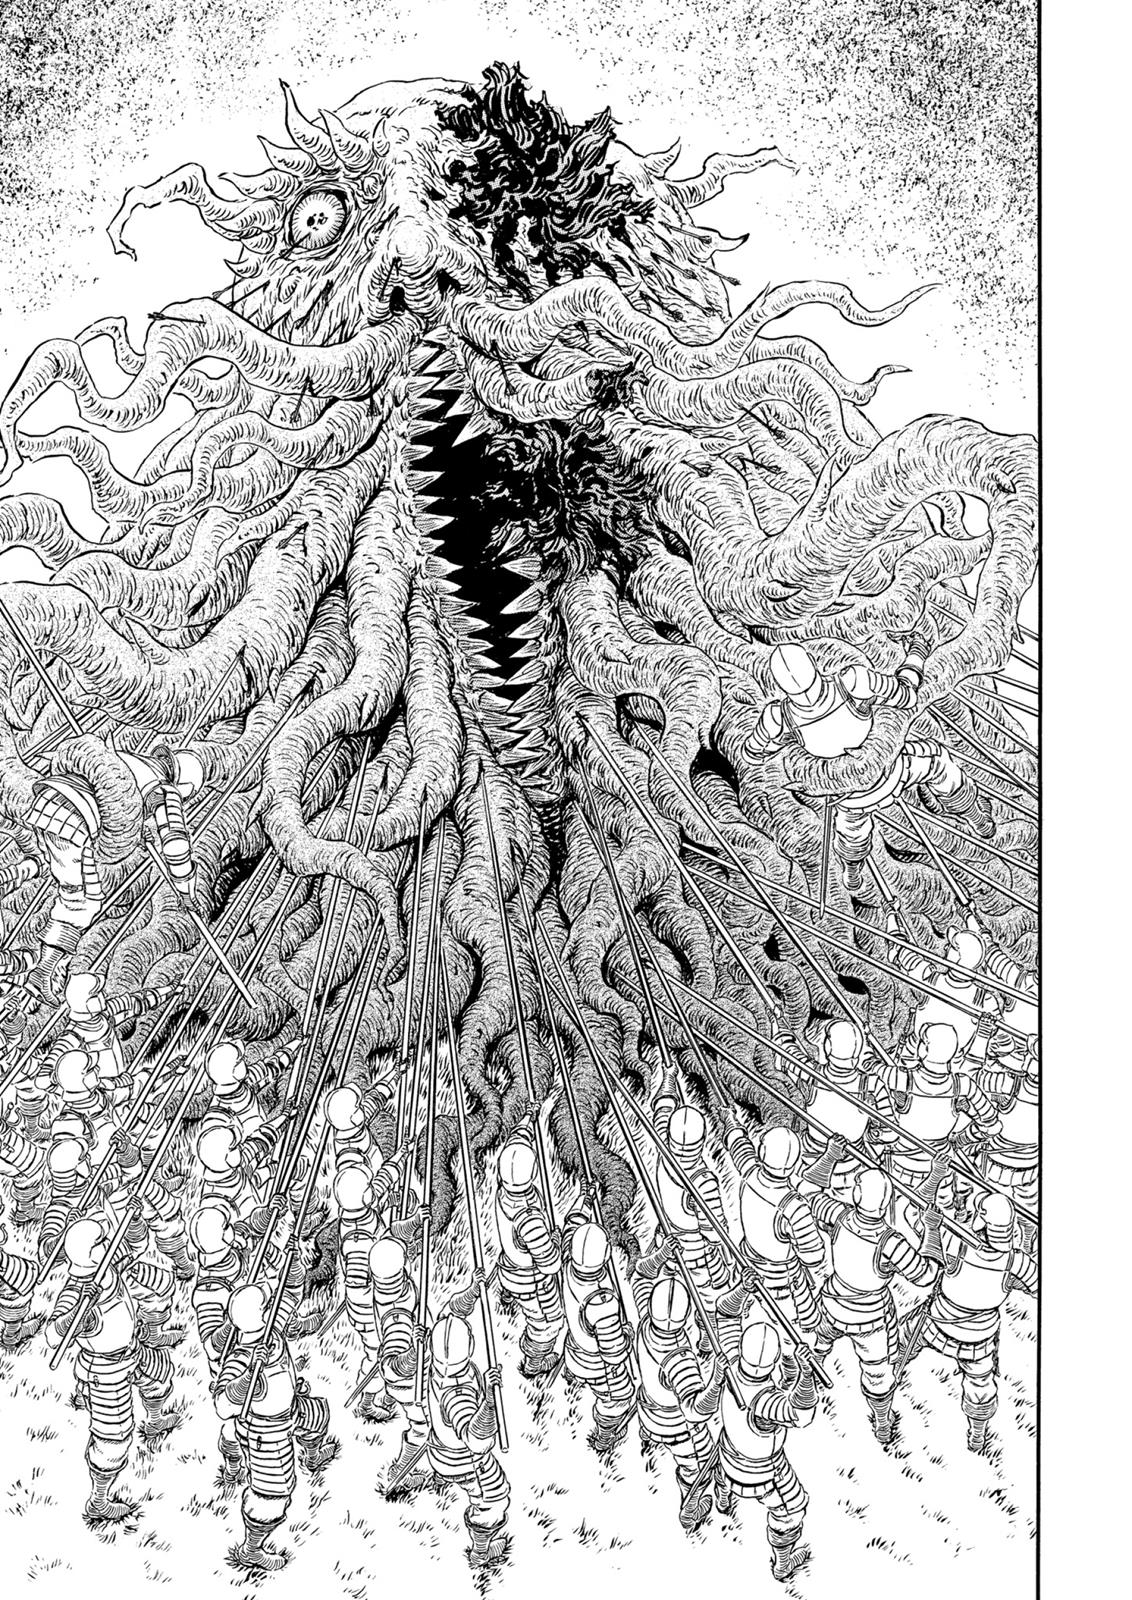 Berserk Manga Chapter 301 image 02